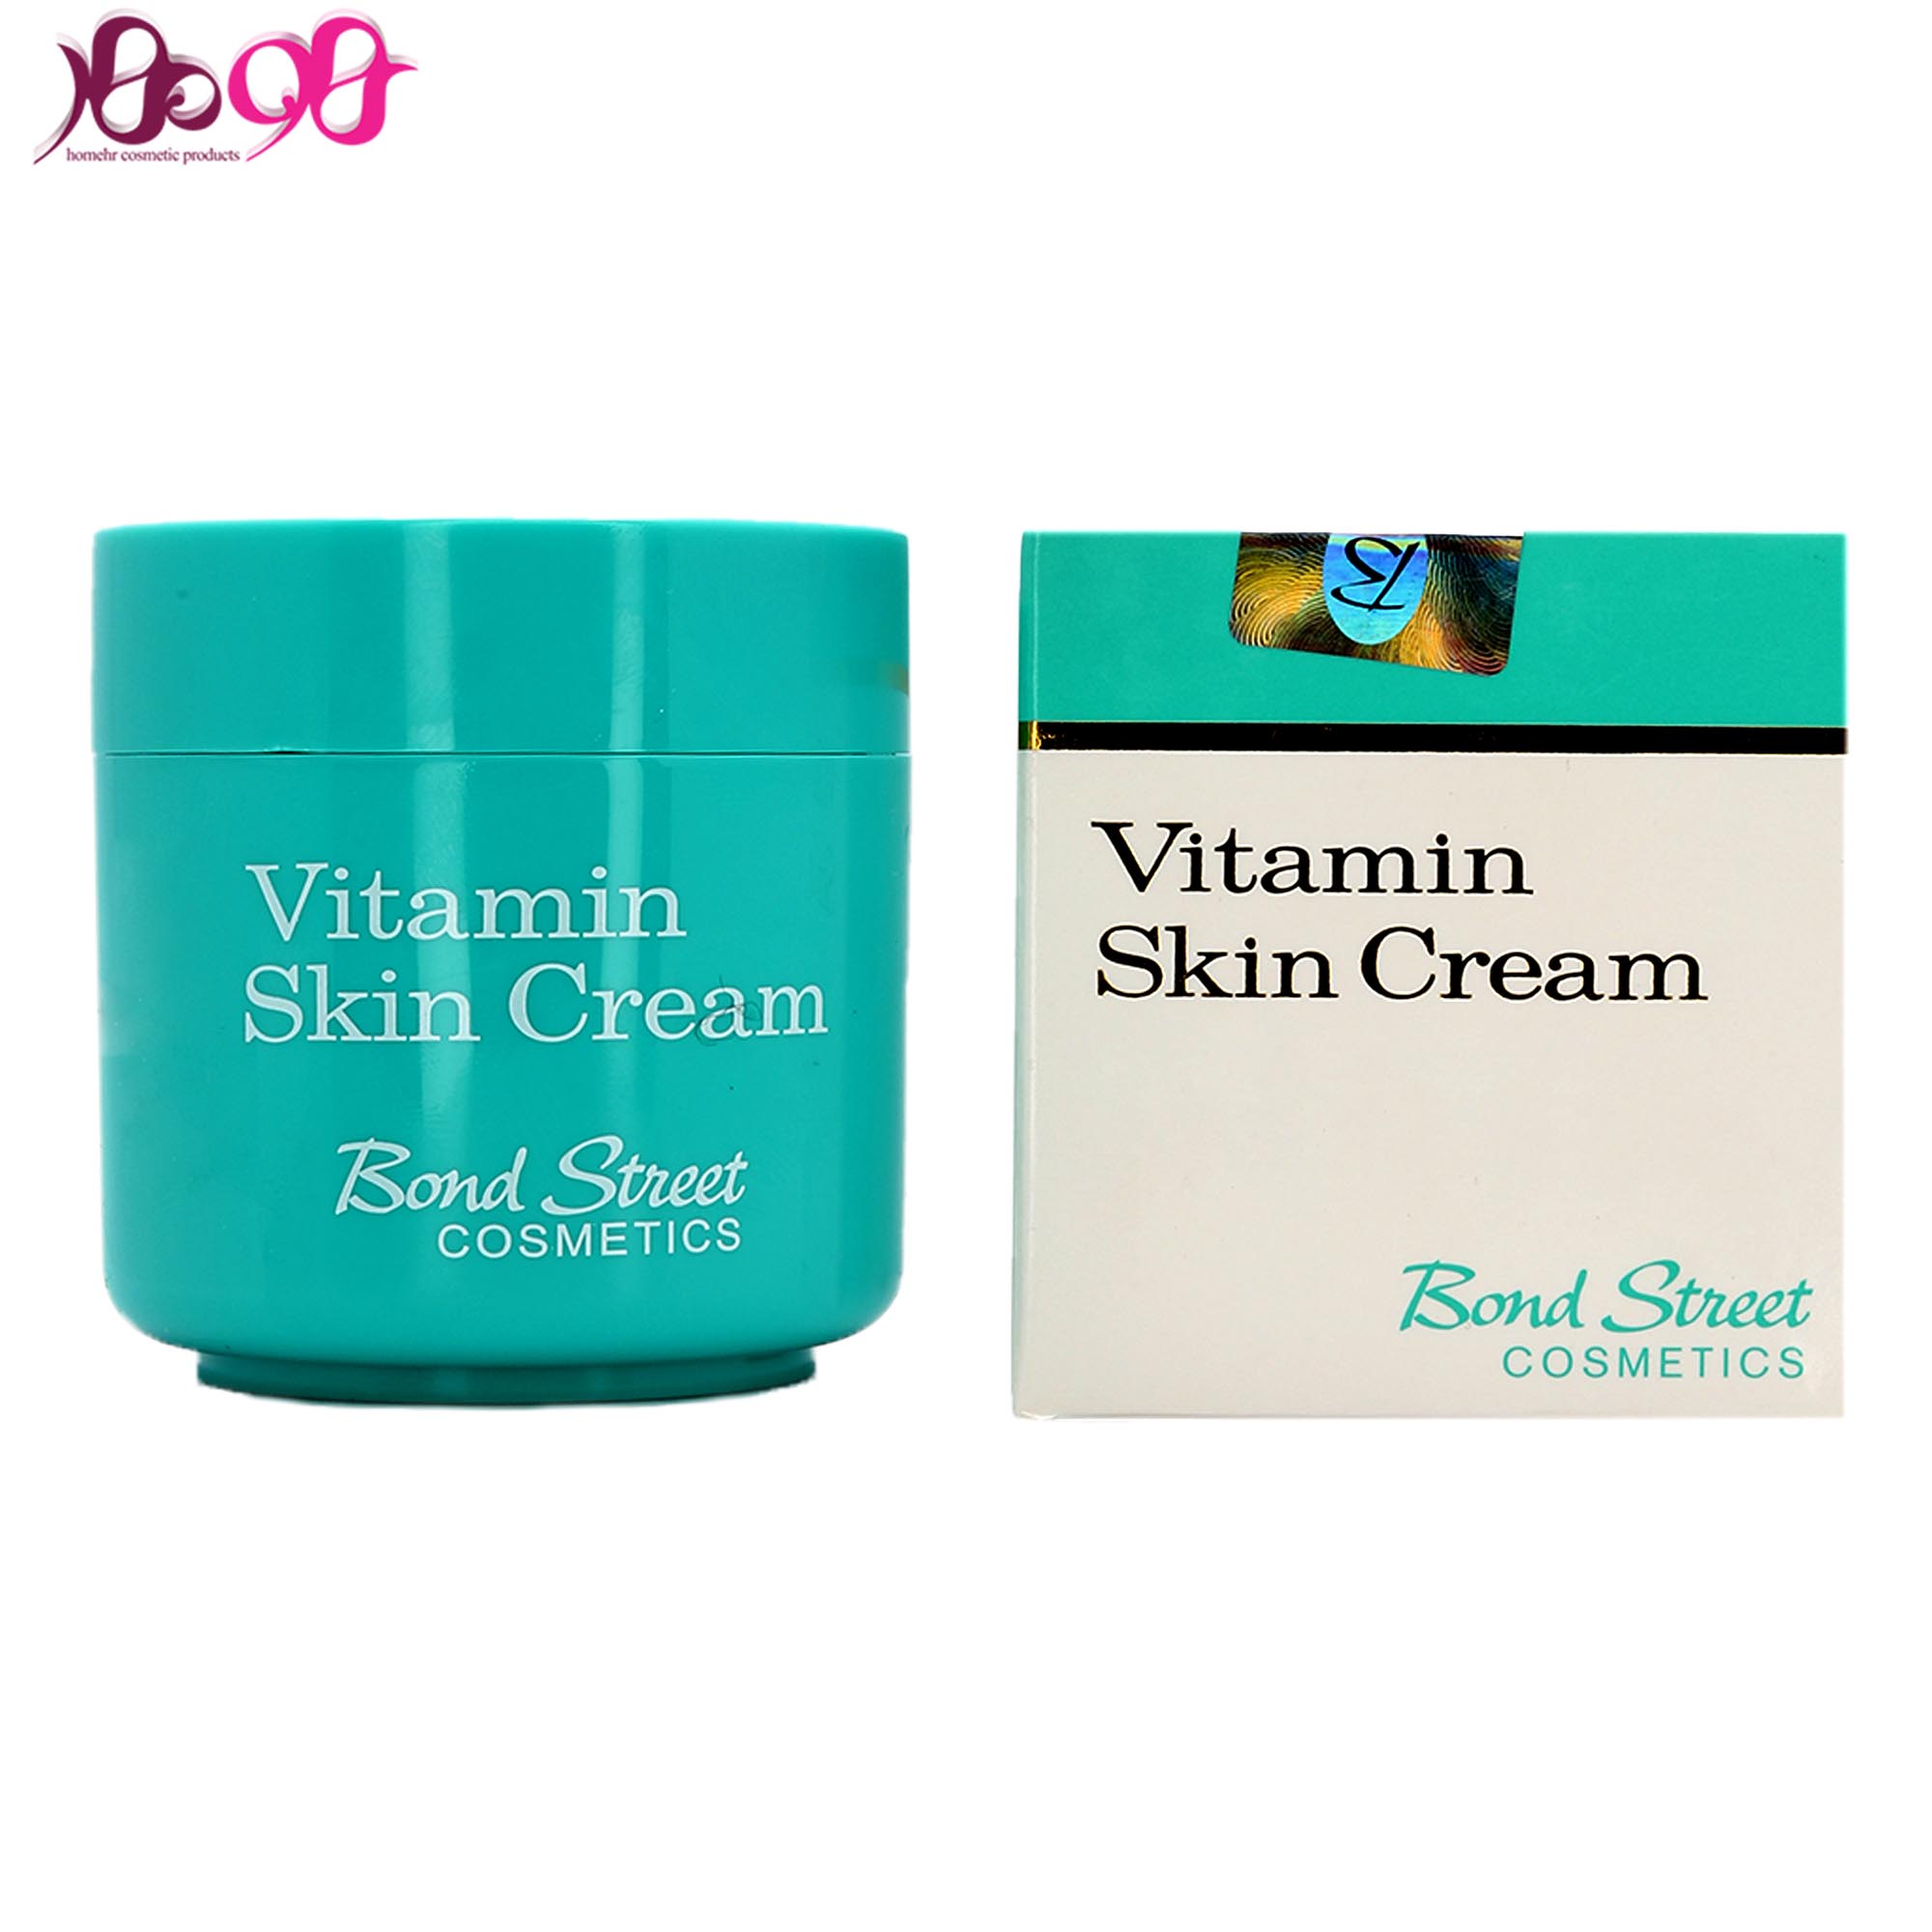 یاردلی-اصل-ویتامینه-bond-street-vitamin-skin-cream